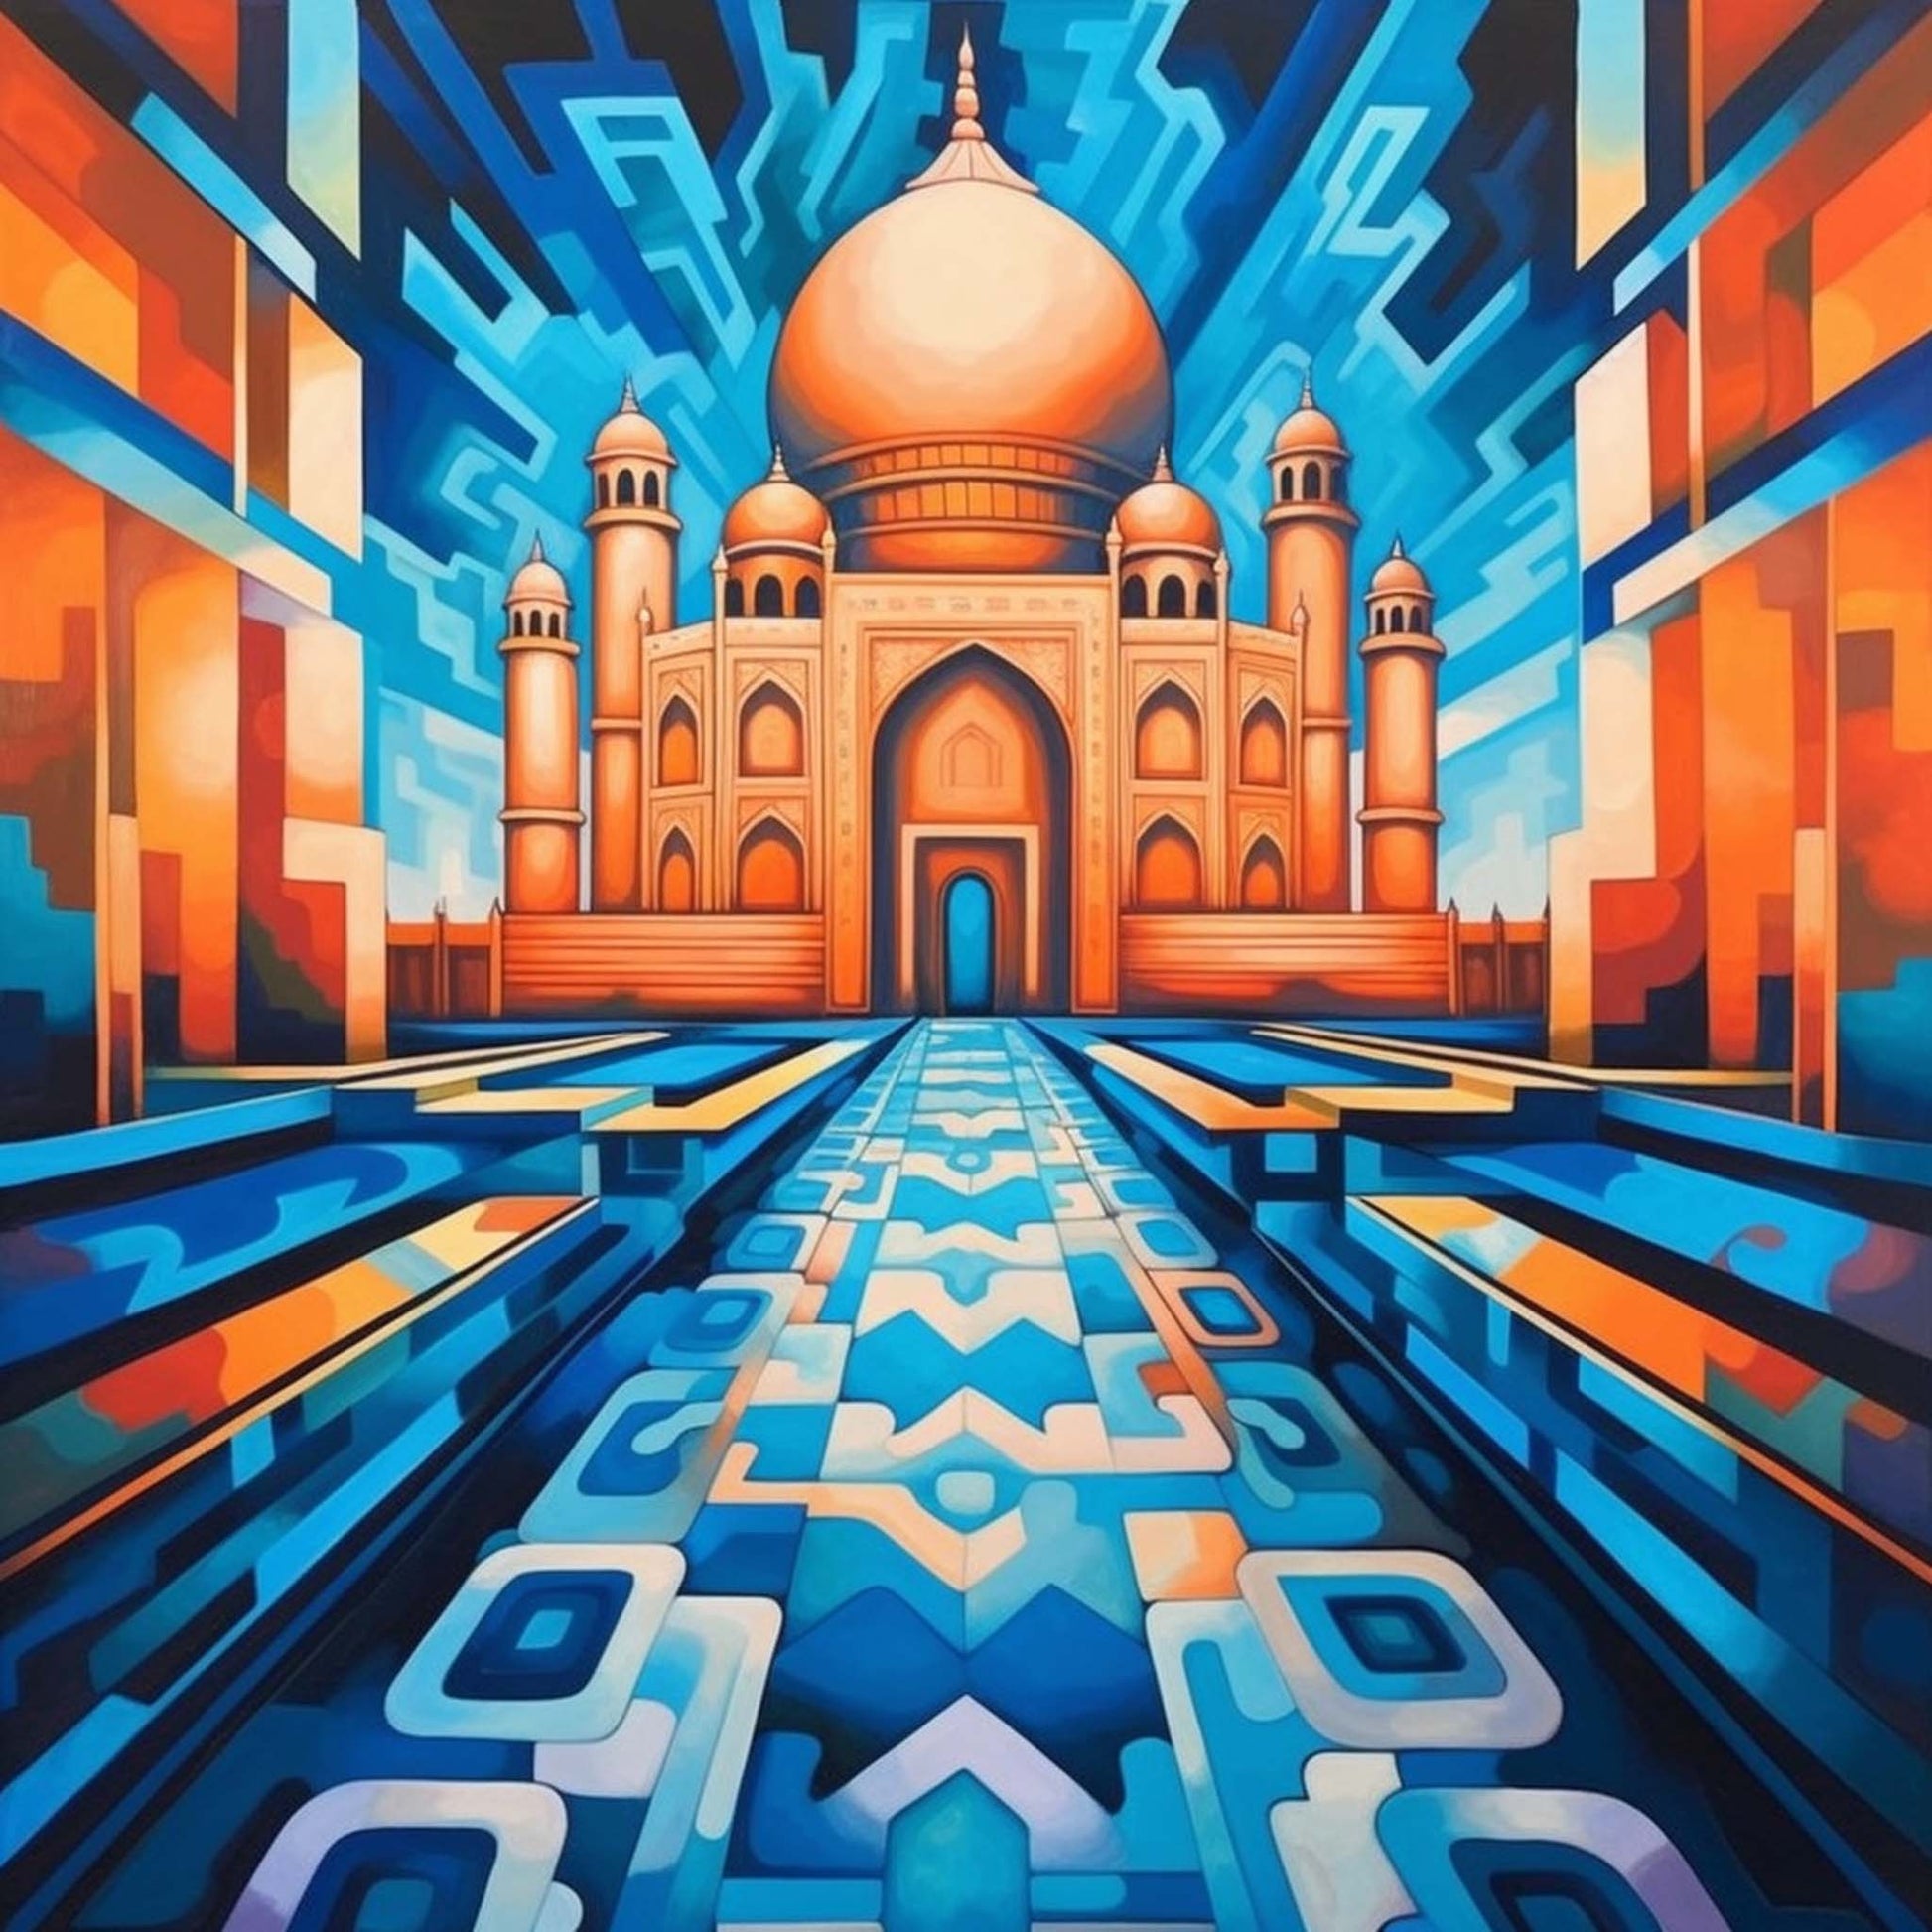 Urbanisto - Taj Mahal - Wandbild in der Stilrichtung des Futurismus